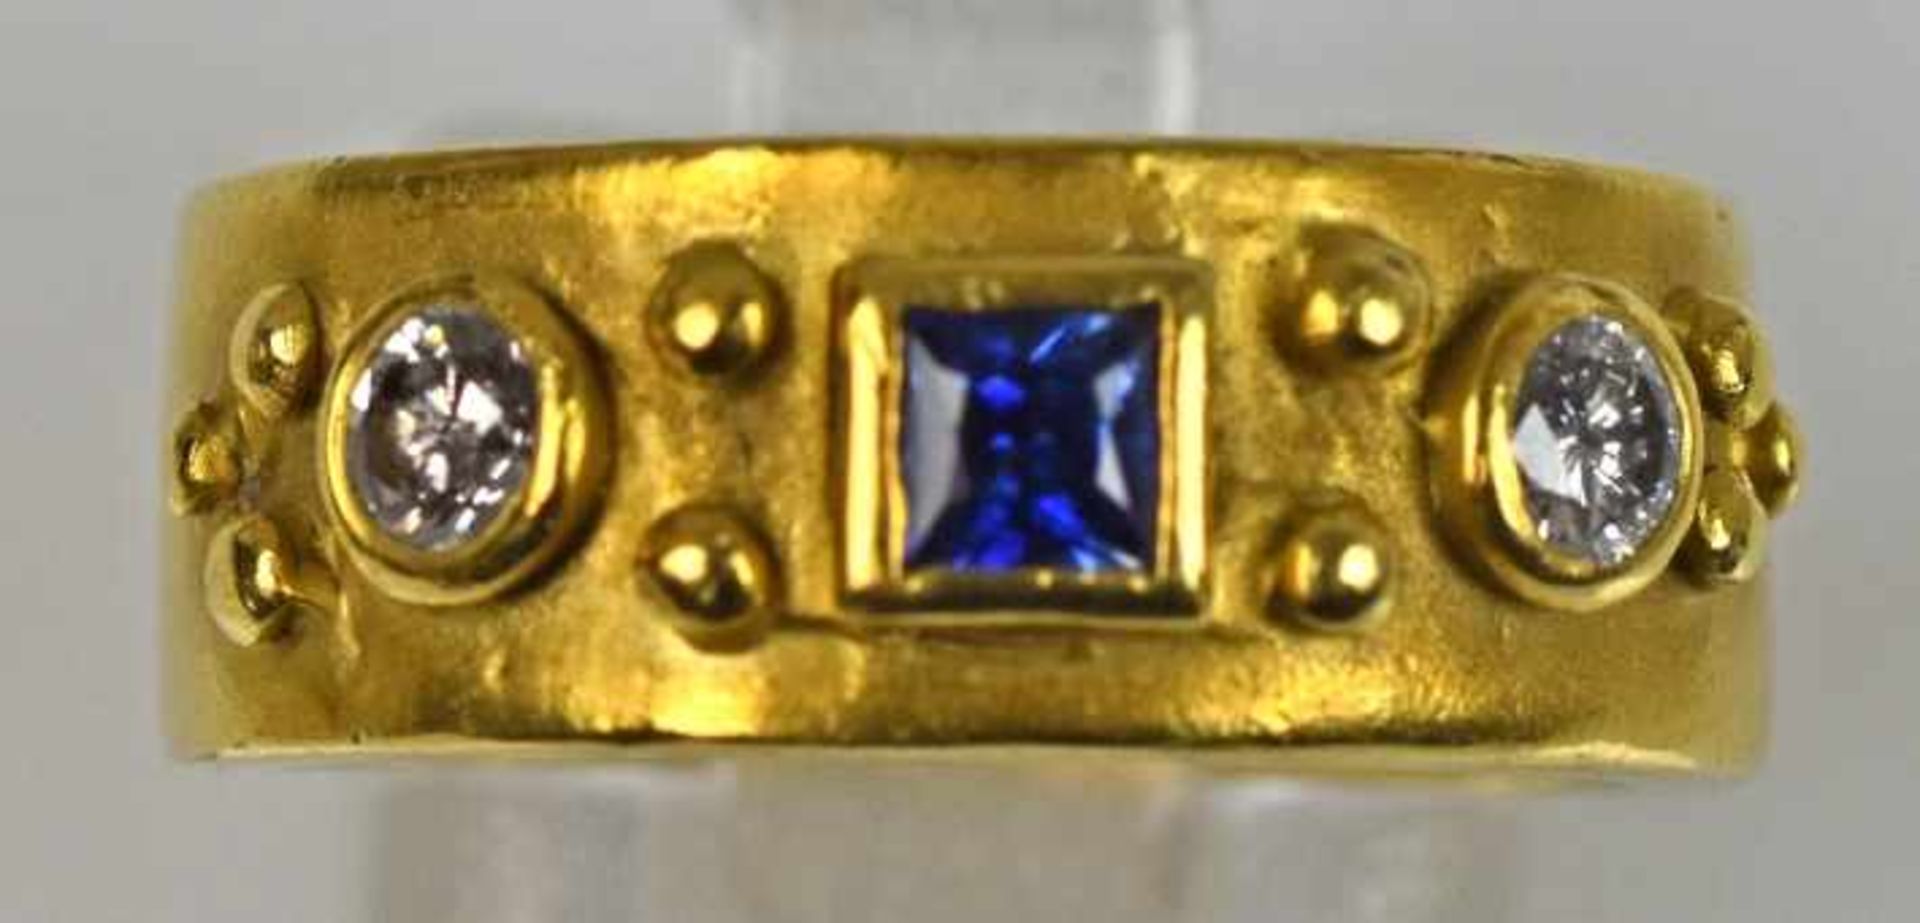 MODERNER RING besetzt mit quadratischem Saphir mit guter Farbe und 2 Brillanten je um 0,1ct w, guter - Bild 2 aus 2